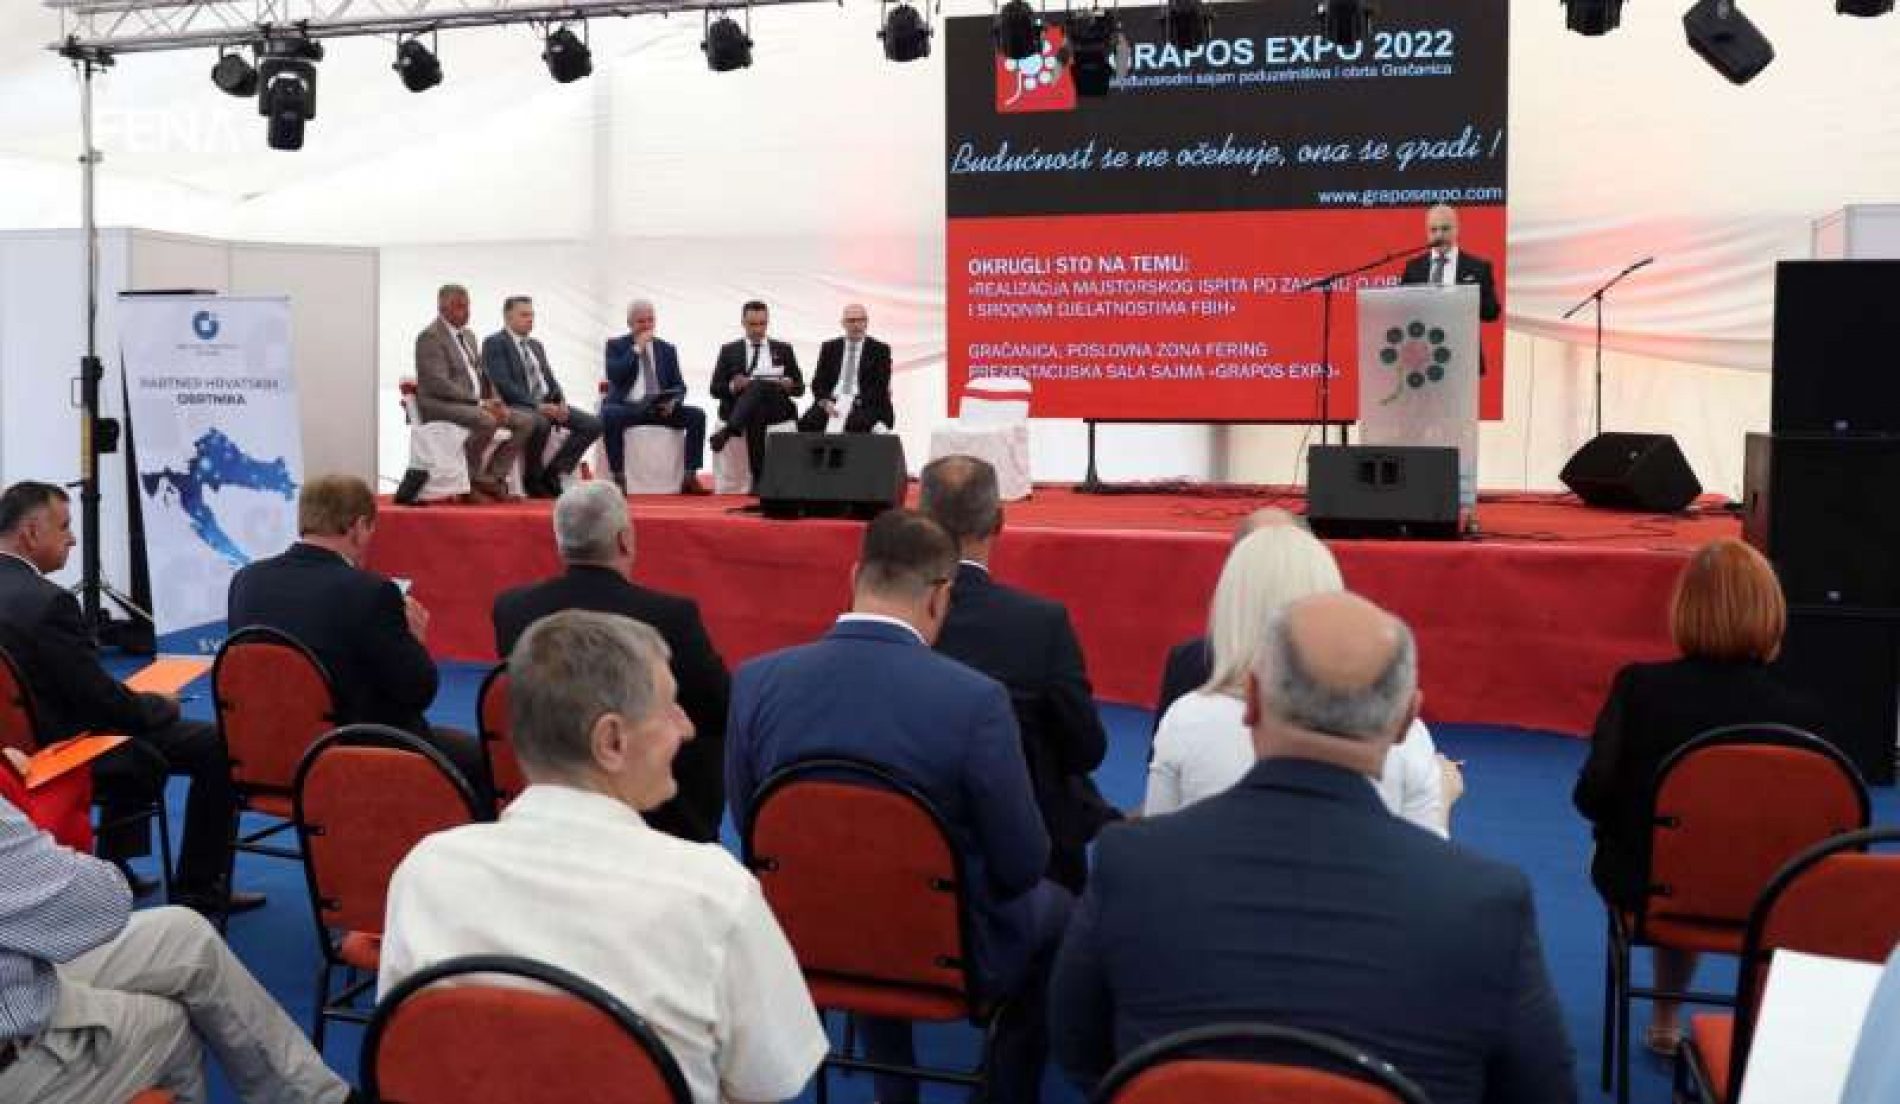 Otvoren sajam ‘Grapos Expo 2022’ u Gračanici